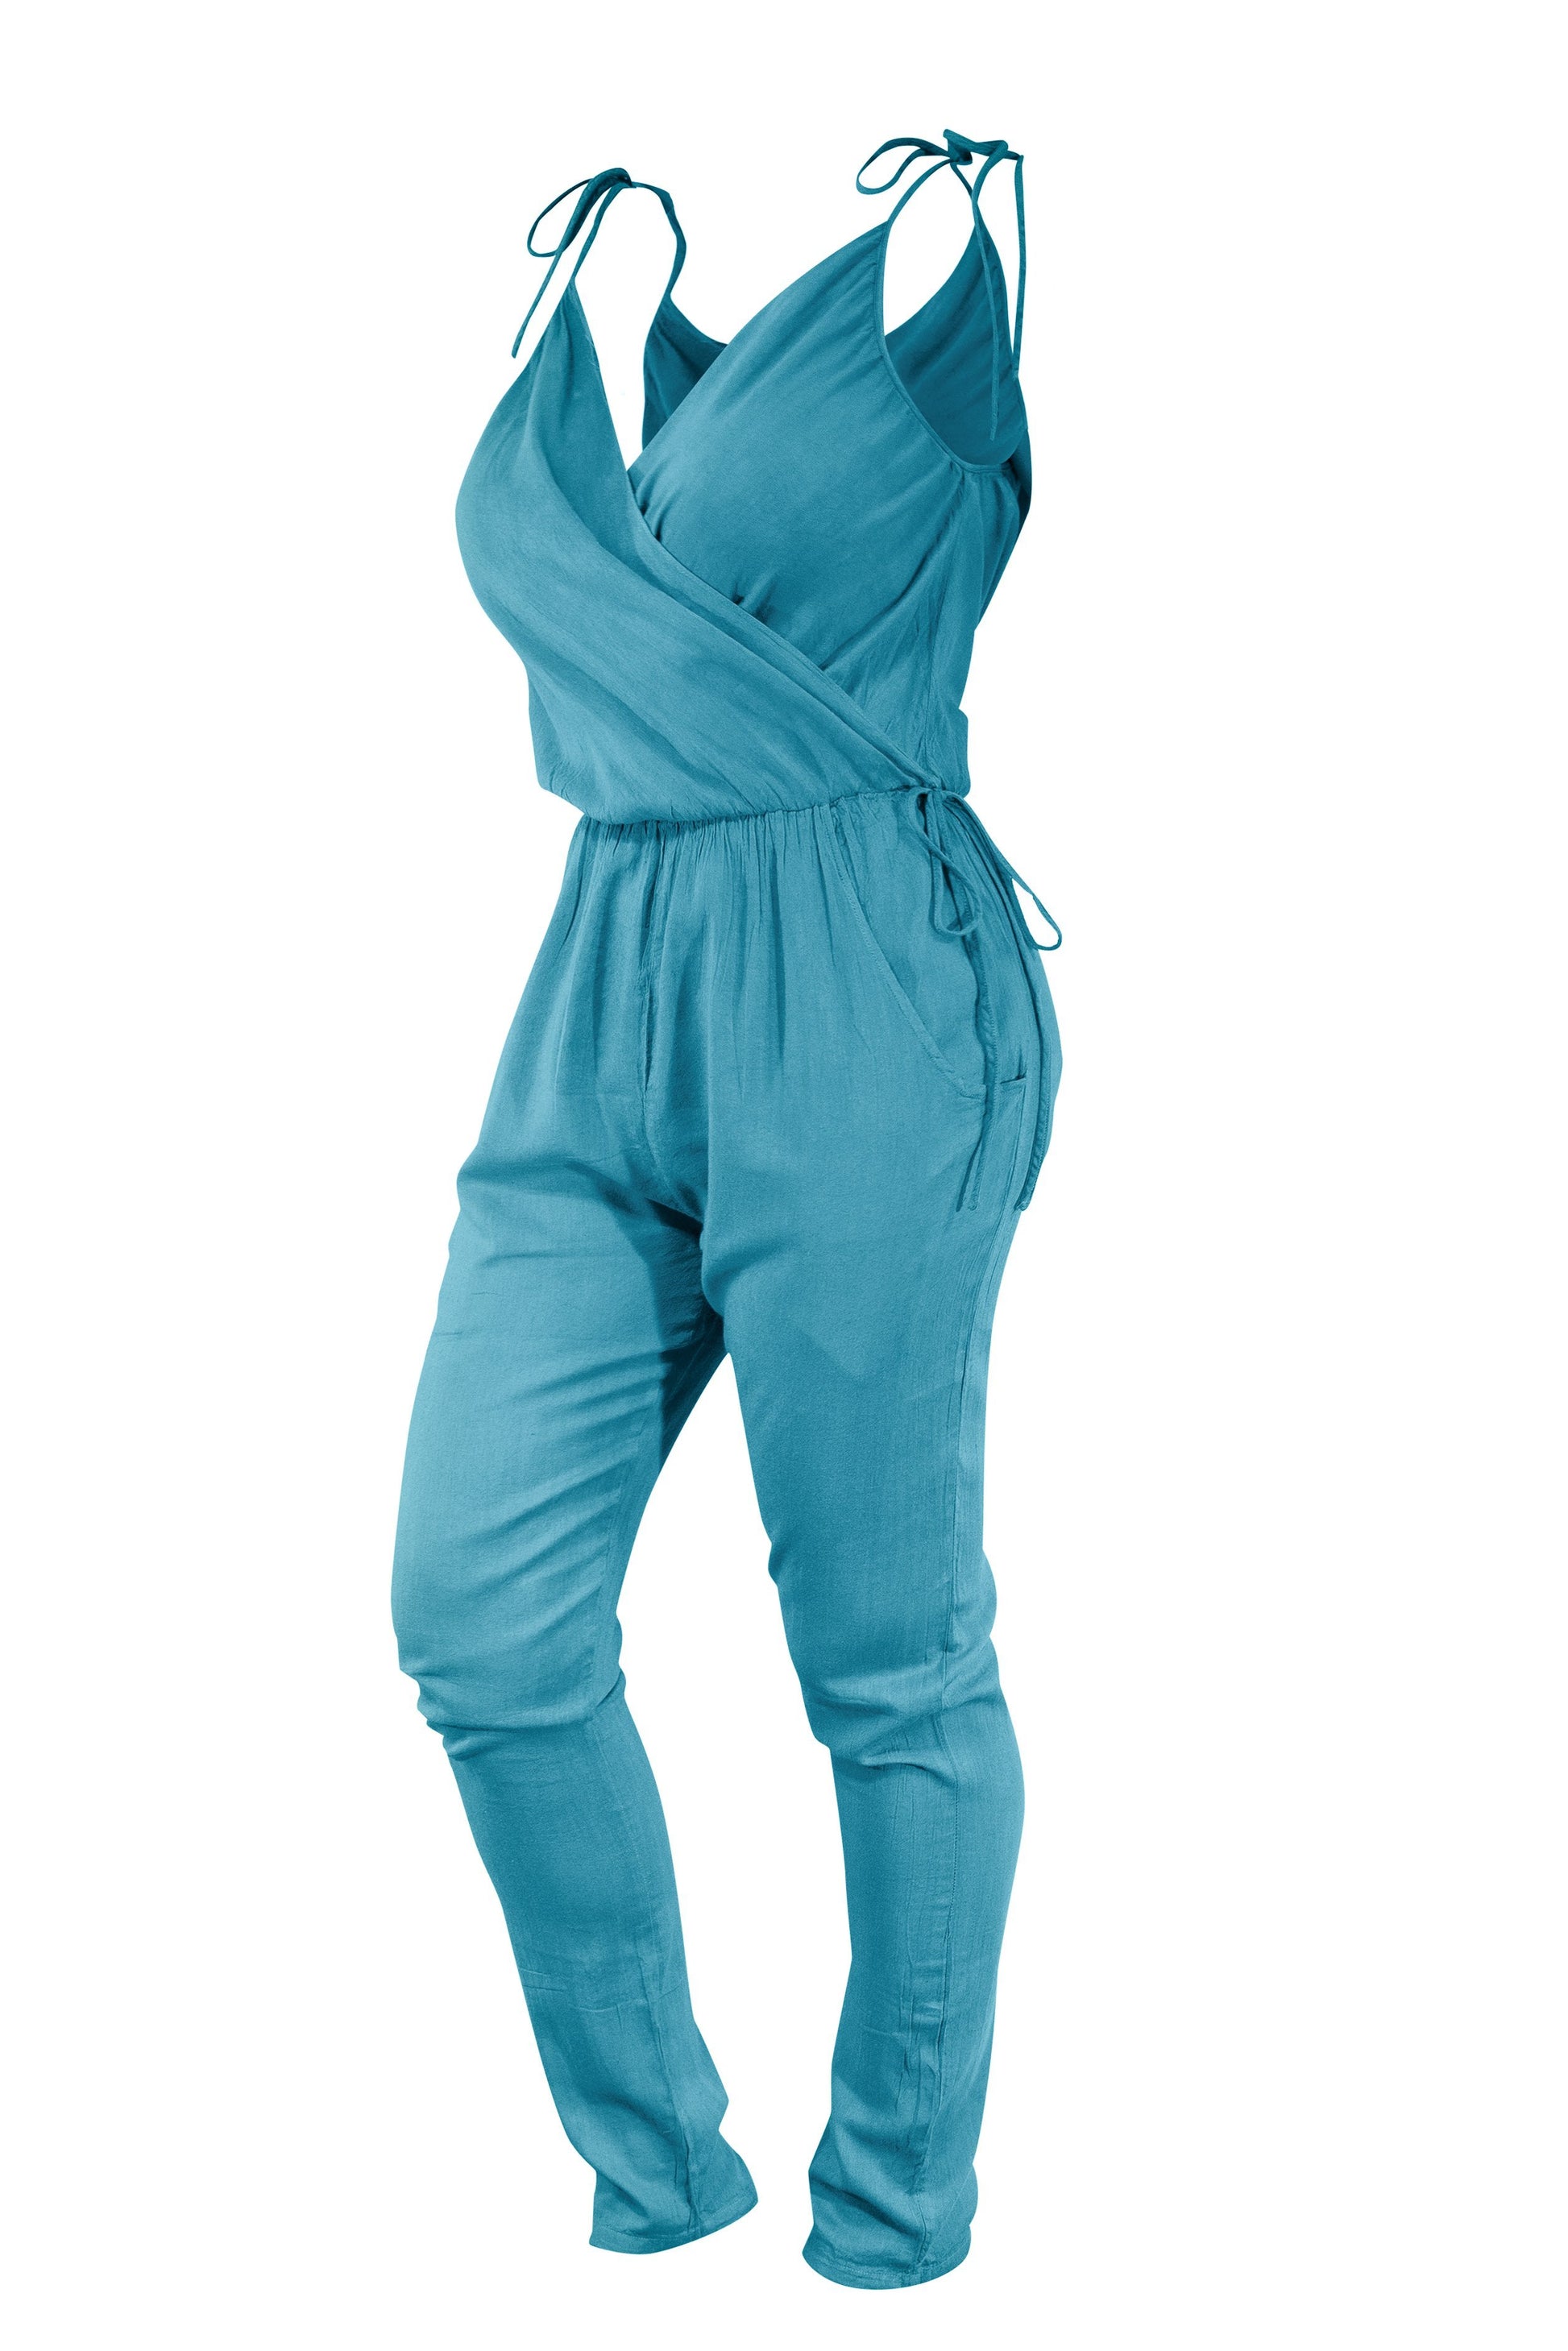 Cotton Jumpsuit Playsuit Strap Bow Tie Shoulder V Neck - CCCollections